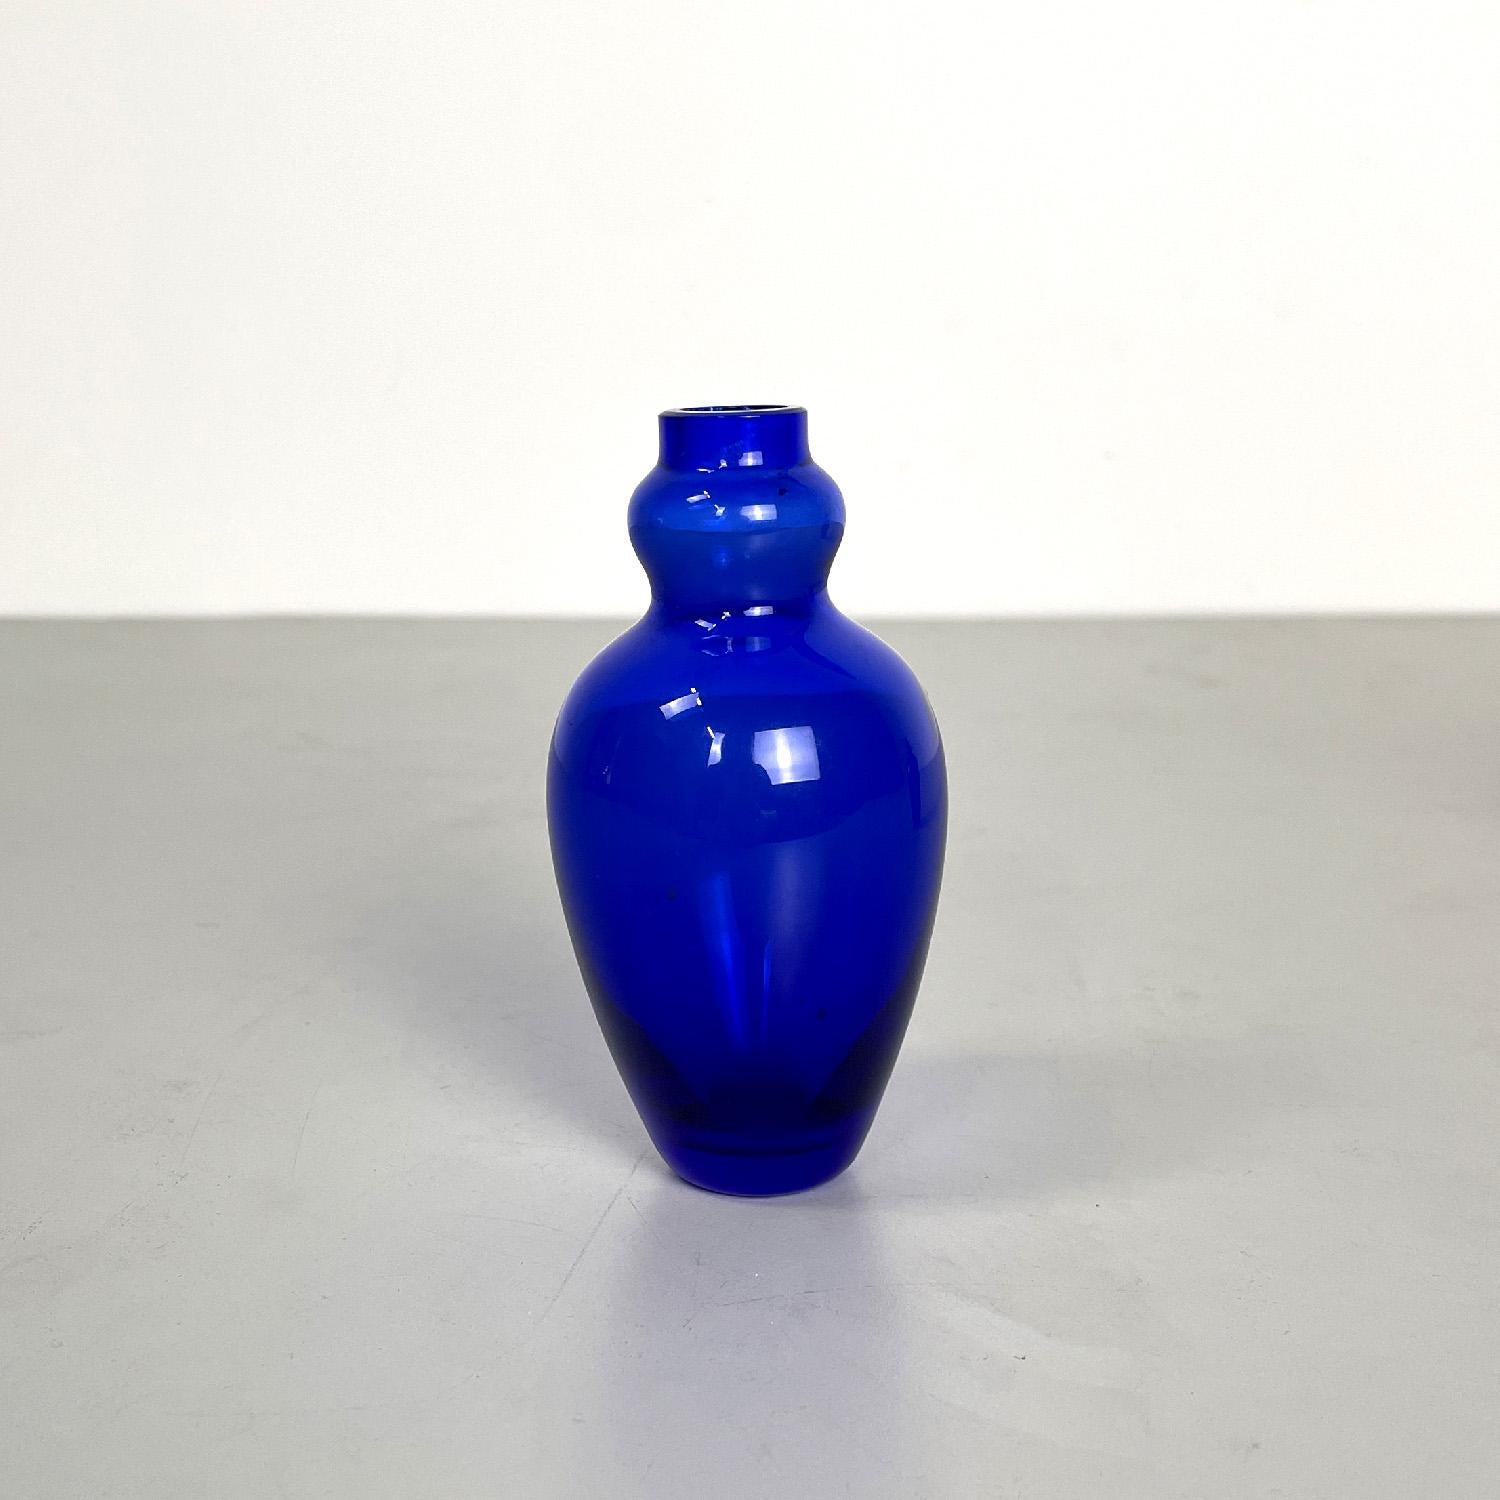 Italienisches modernes Paar Vasen aus blauem Muranoglas von Venini, 1990er Jahre
Paar runde Vasen mit Sockel aus blauem Muranoglas. Die Struktur ist geschwungen und gewunden, sie öffnet sich im mittleren Teil und schließt sich unten.
Produziert von